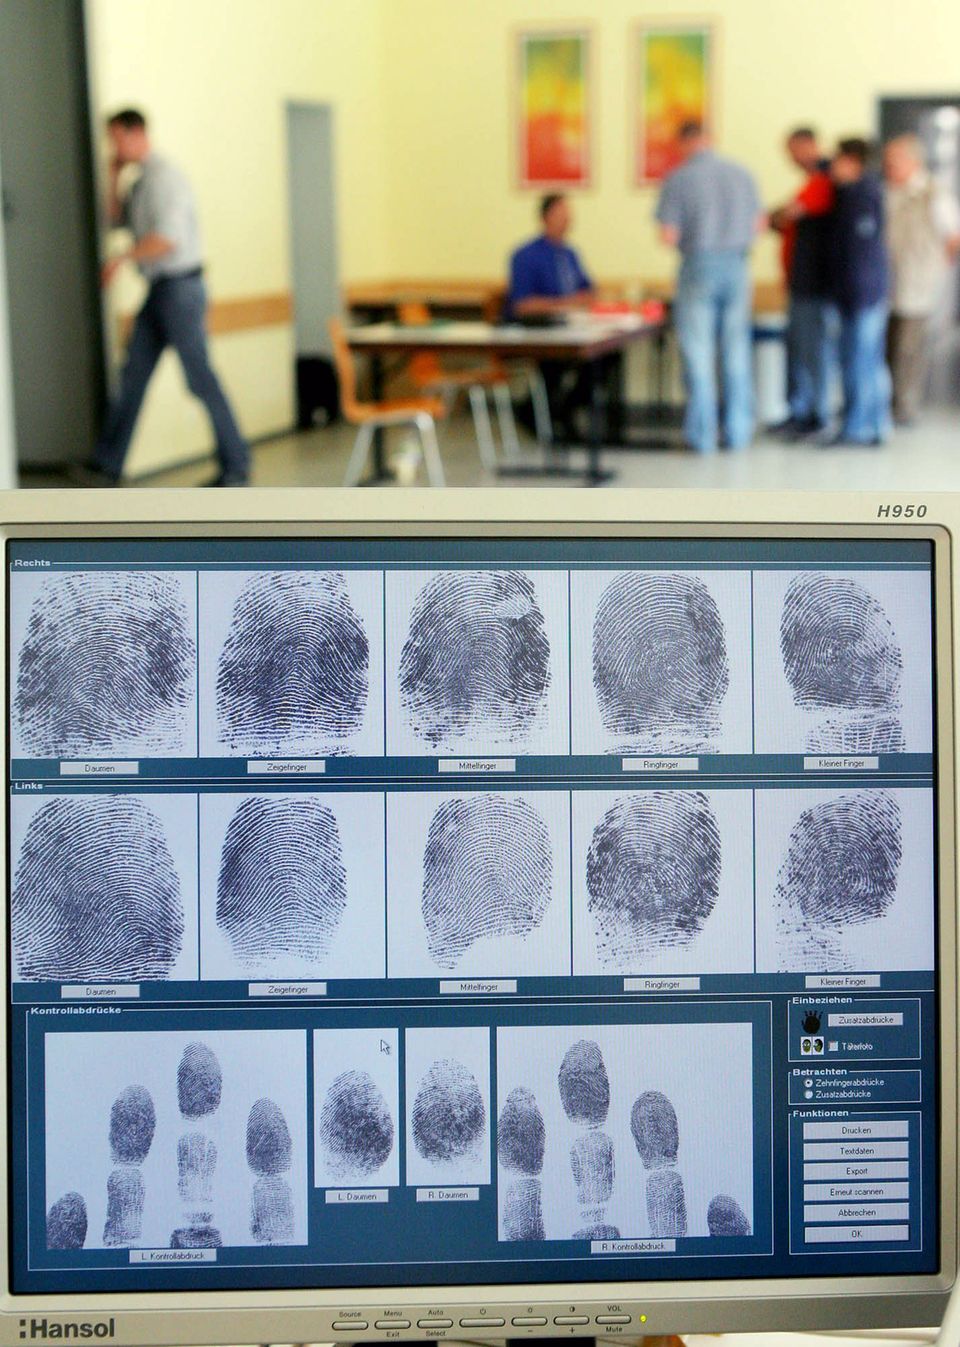 Auf einem Computerbildschirm sind in Bad Homburg die Fingerabdrücke von einem Mann zu sehen